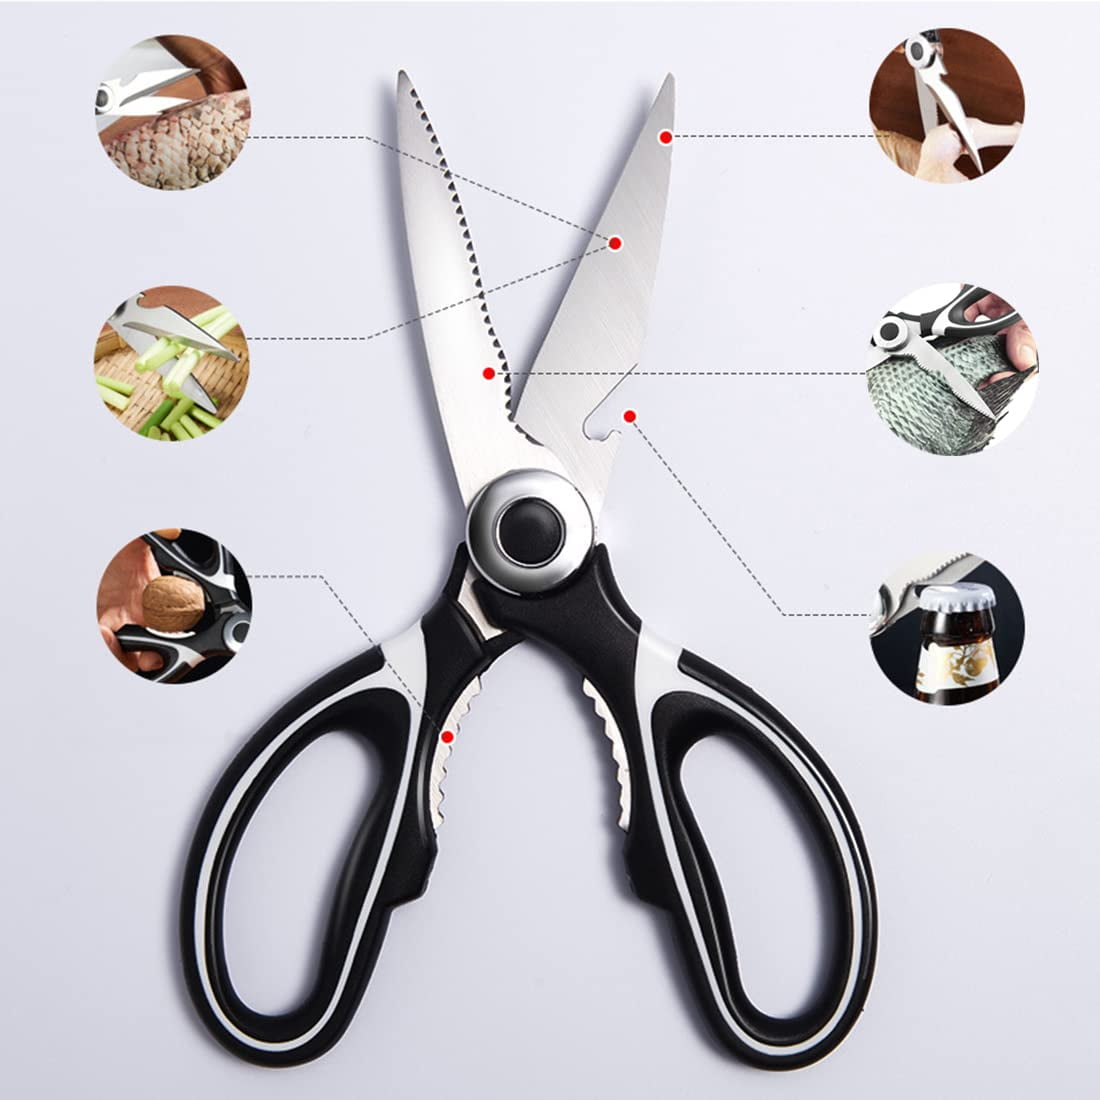  OXO Good Grips Kitchen Scissors 0.9 x 3.5 x 8.1: Home & Kitchen